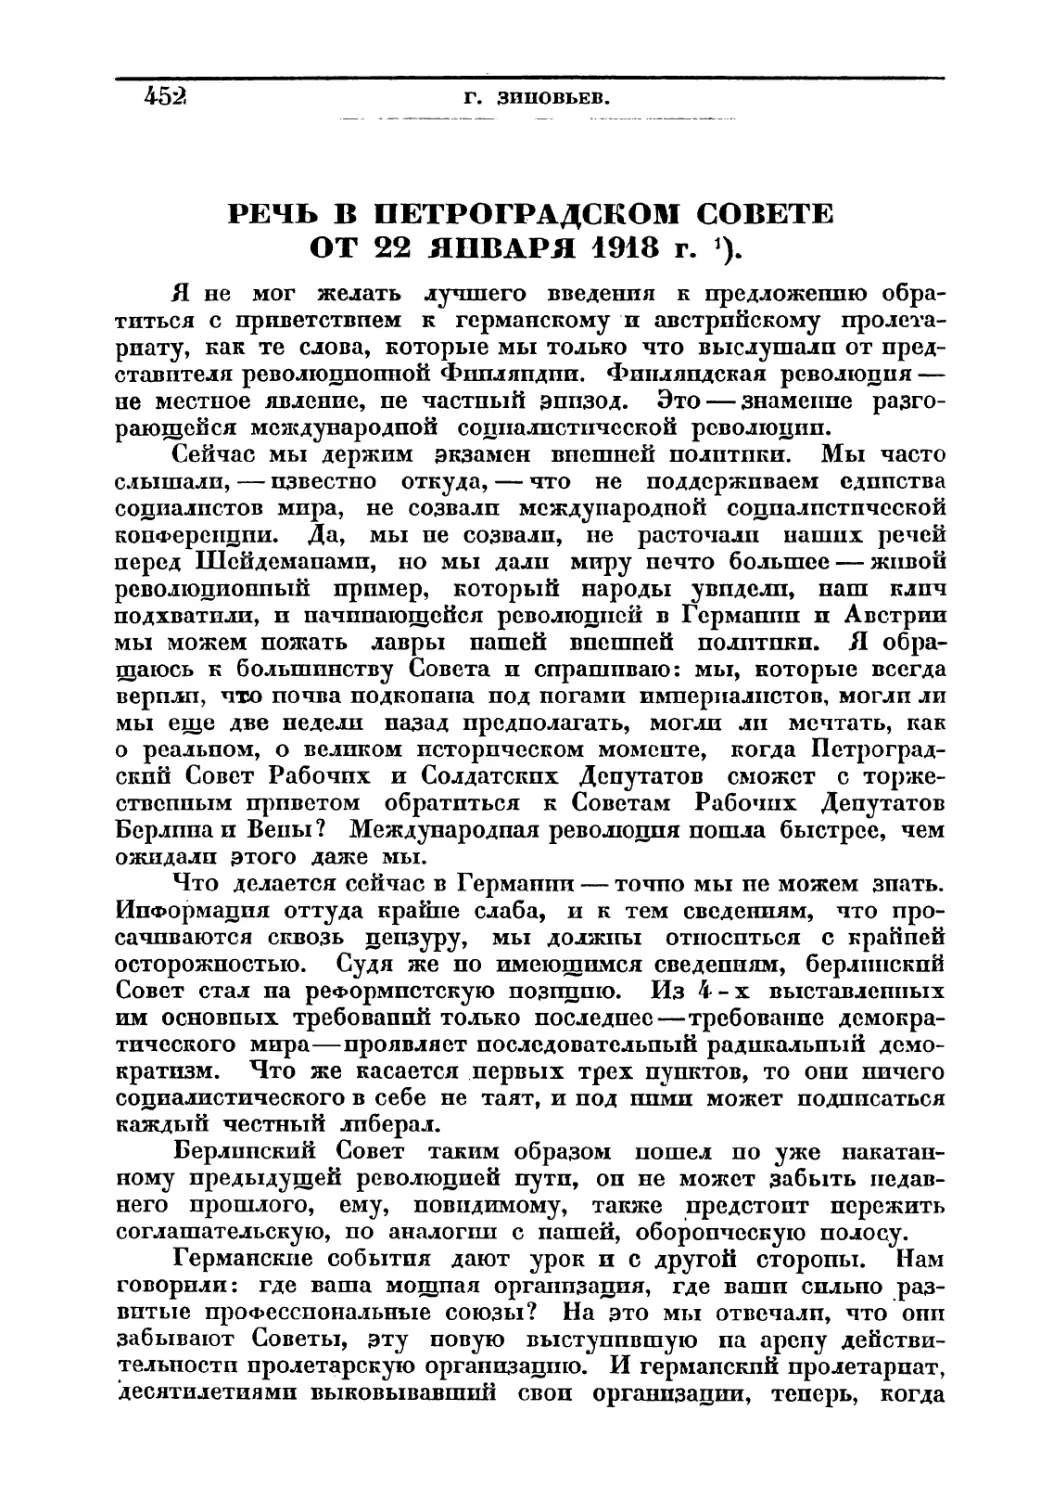 РЕЧЬ В ПЕТРОГРАДСКОМ СОВЕТЕ ОТ 22 ЯНВАРЯ 1918 г.